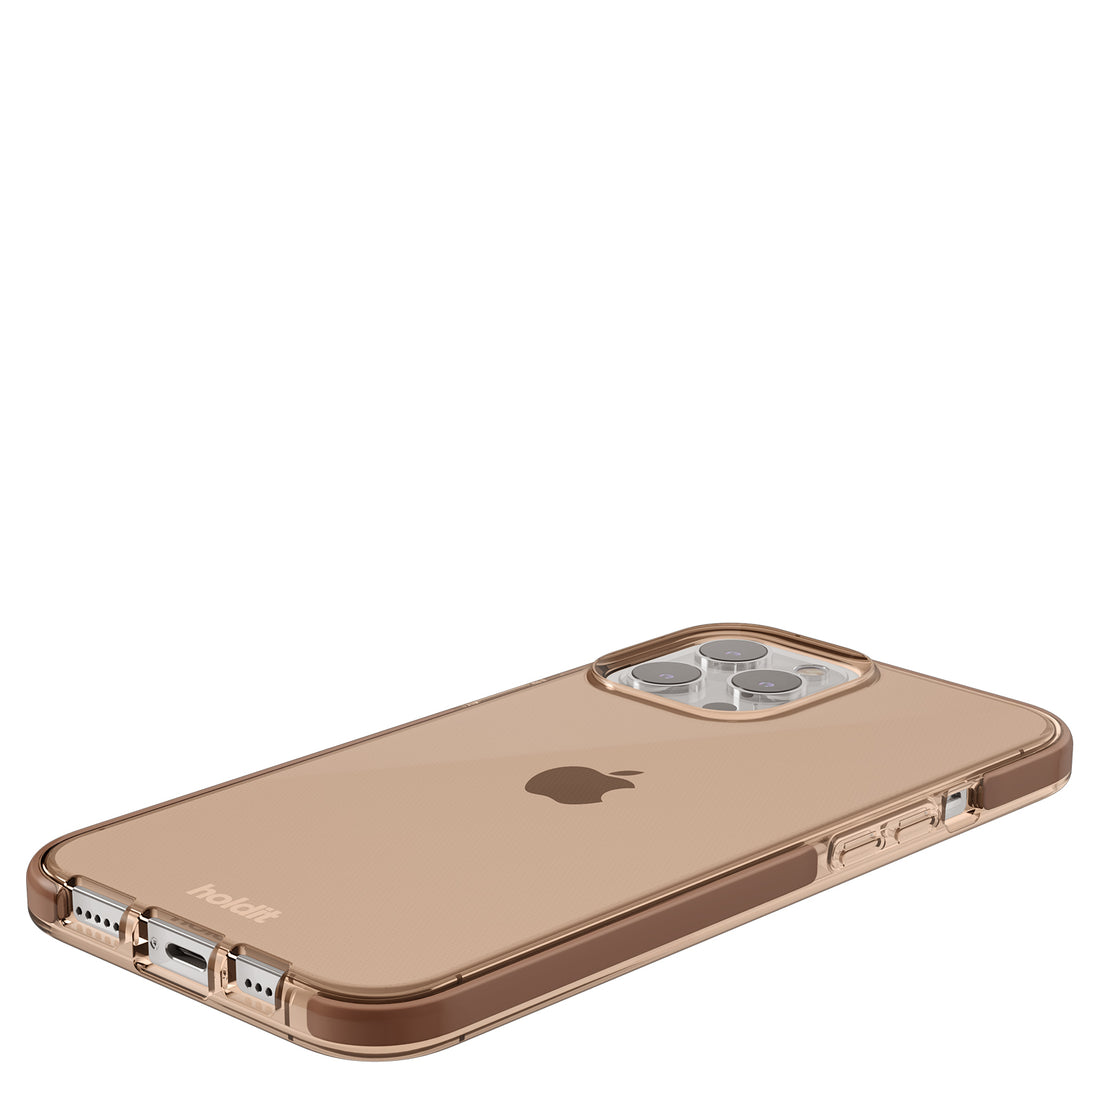 Seethru Case iPhone 13 Pro Max Dark Brown